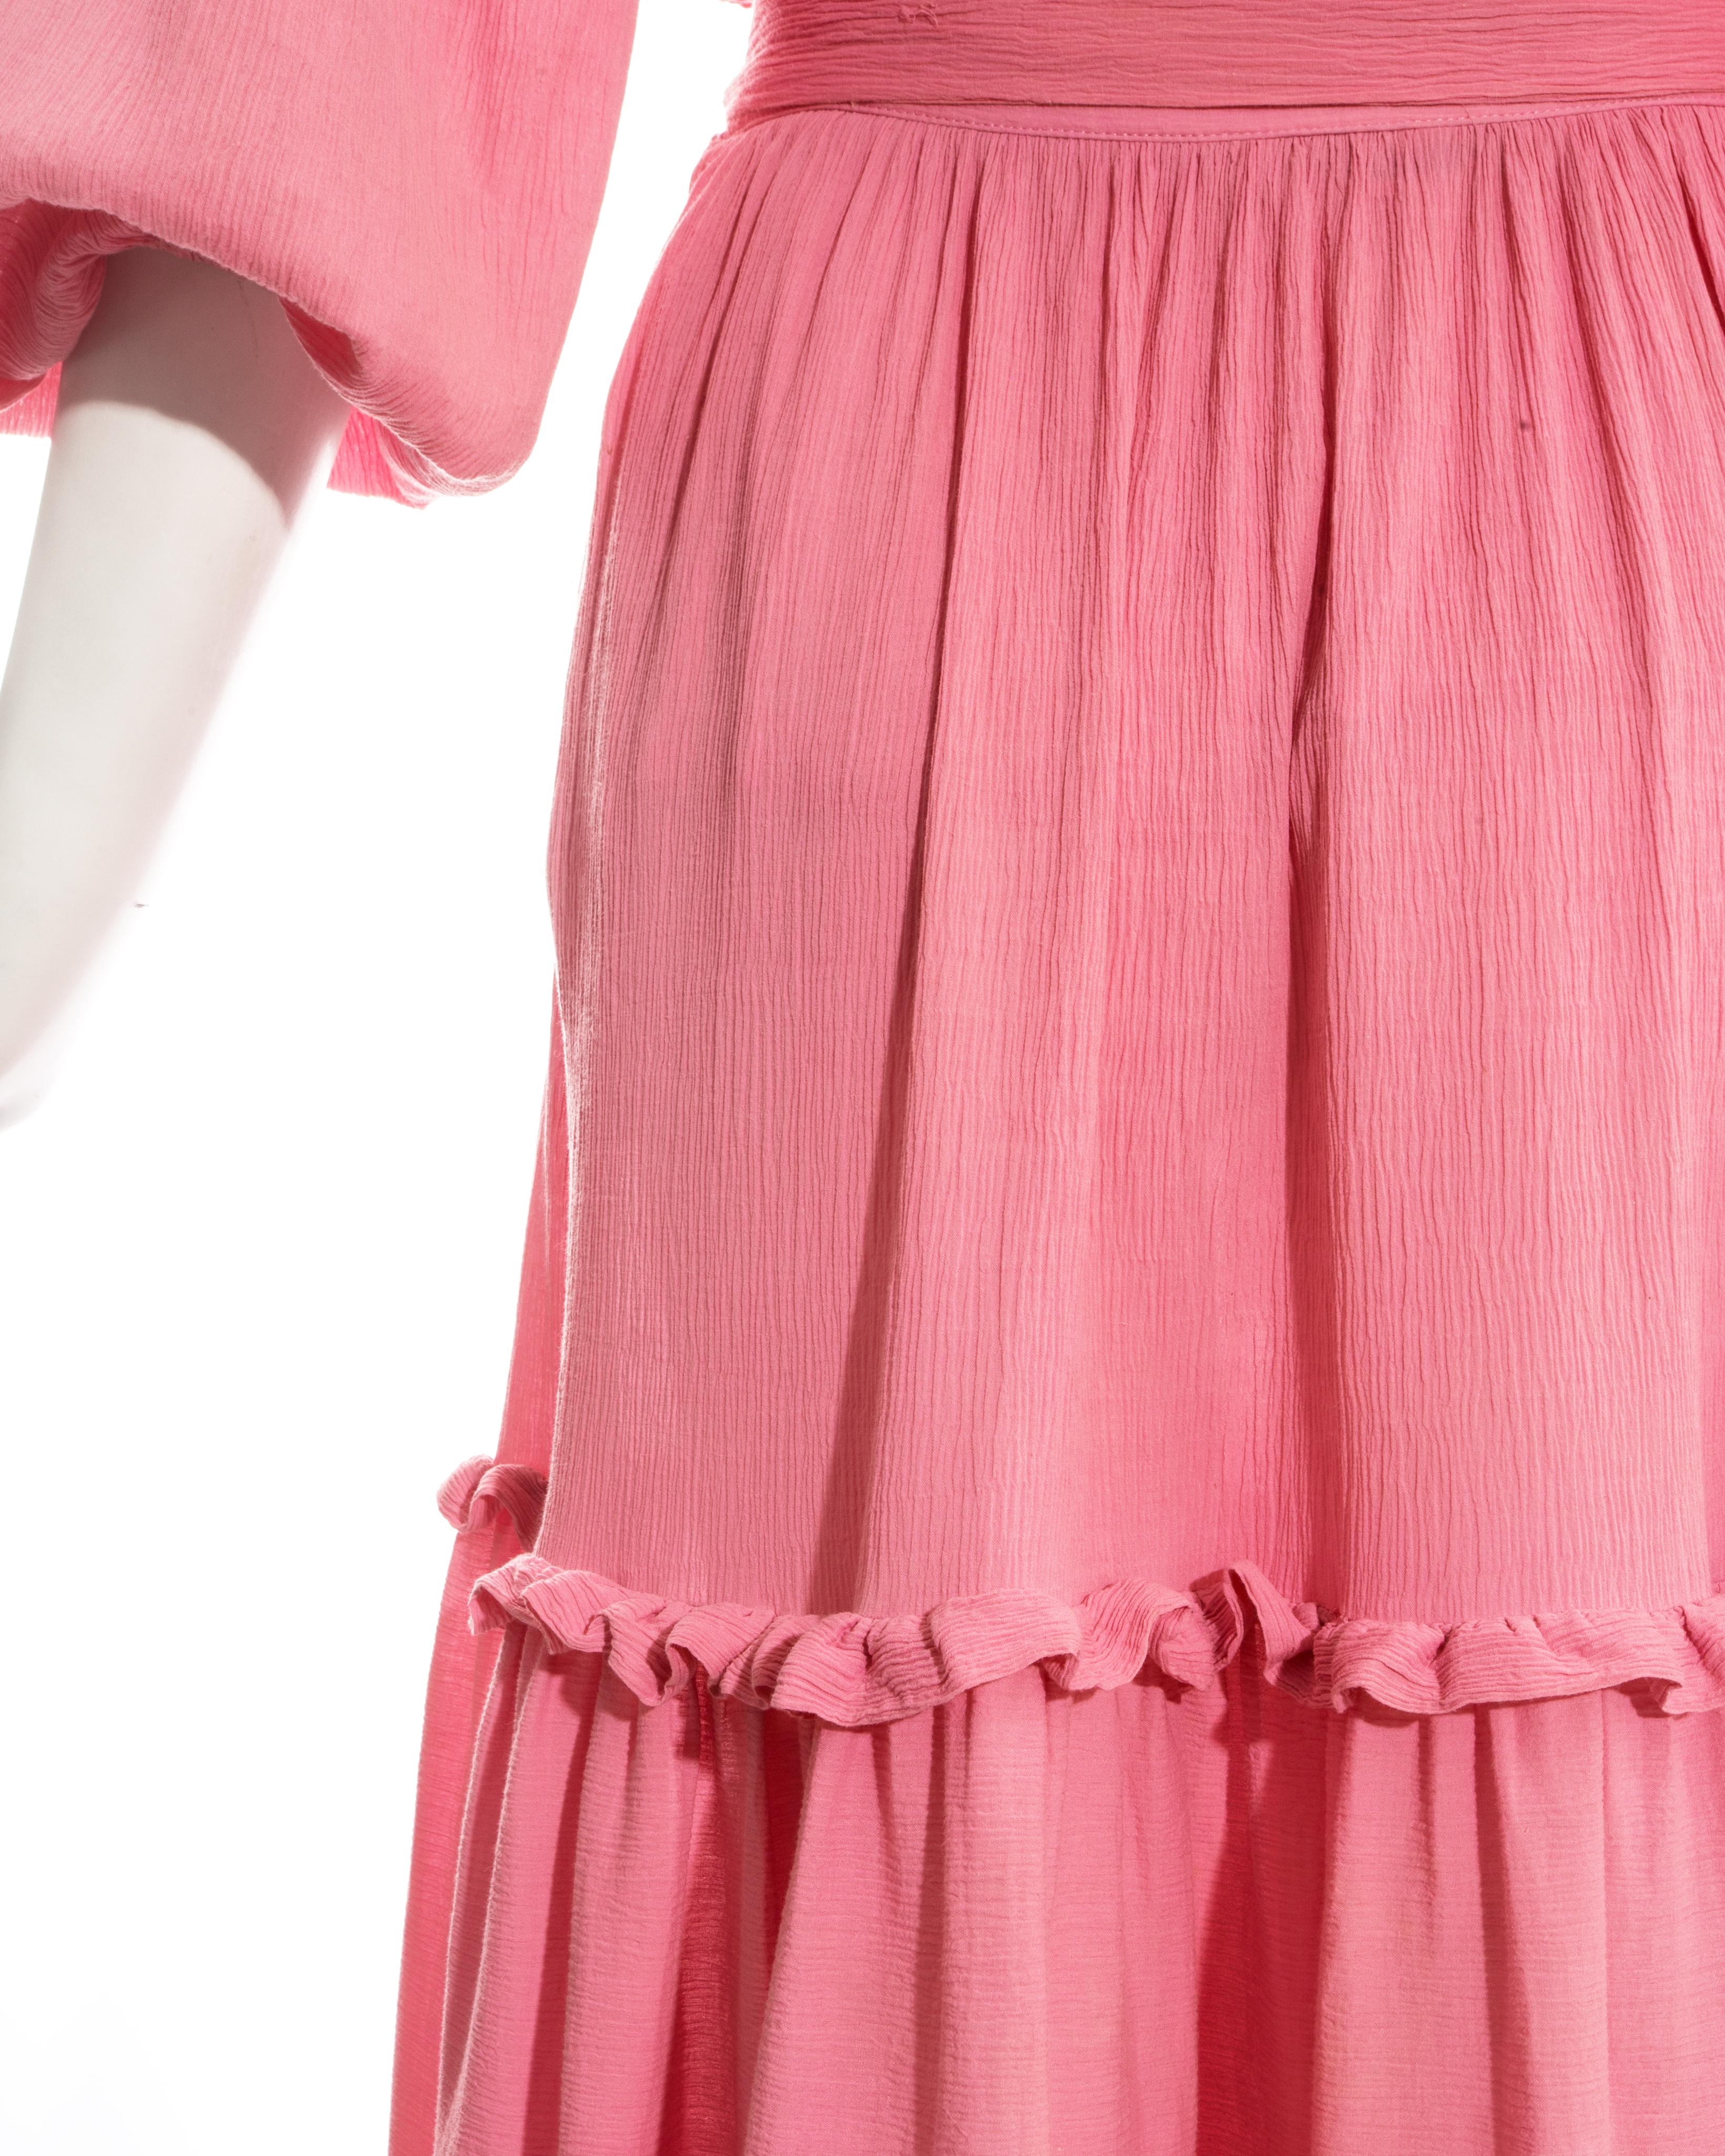 Women's Yves Saint Laurent pink crinkled silk blouse and skirt set, c. 1970s